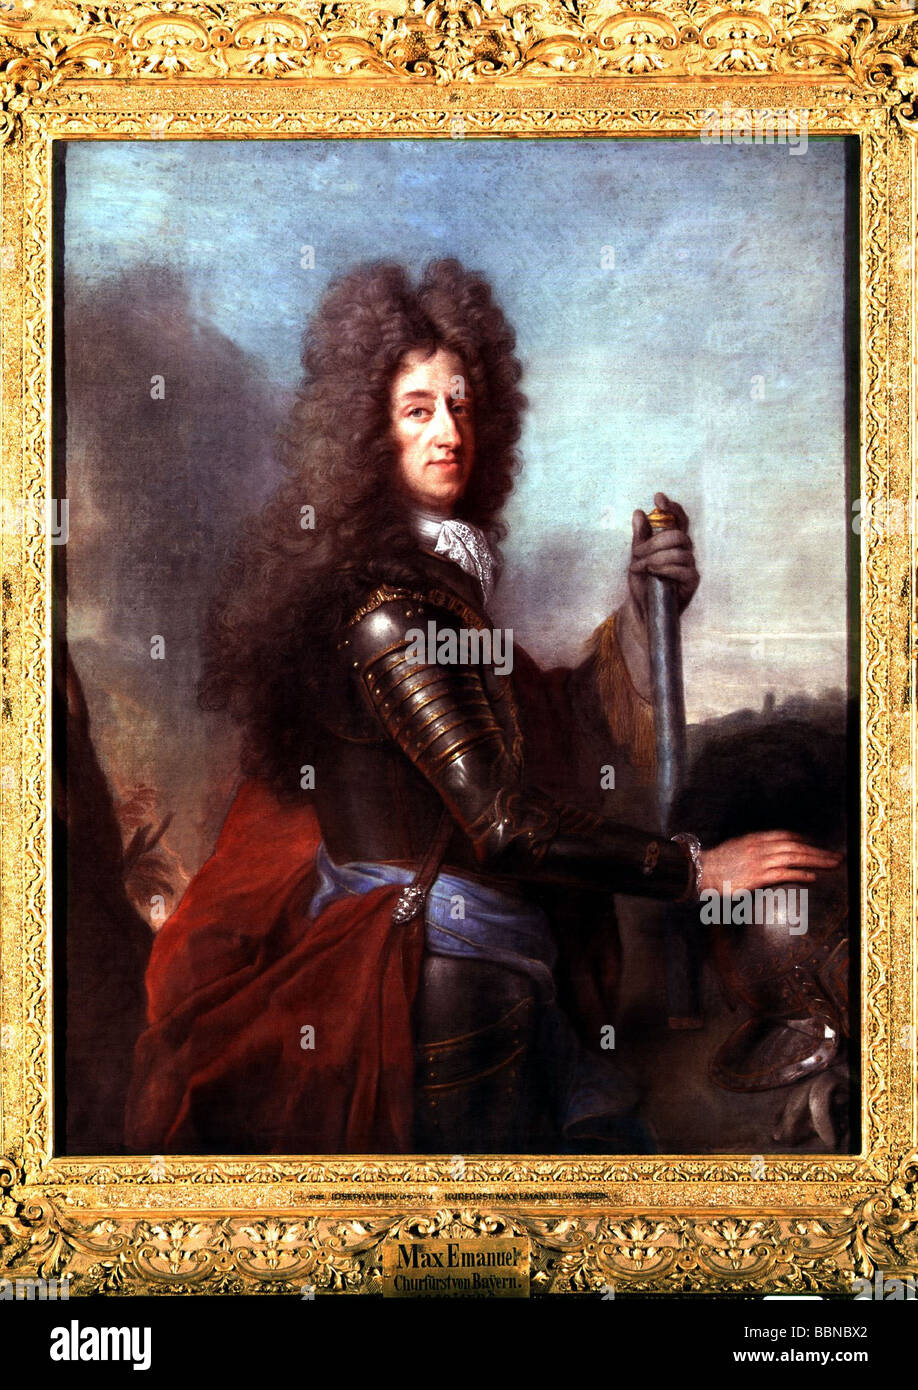 Maximilian II Emanuel, 11.7.1662 - 26.2.1726, Kurfürst von Bayern 26.5.1679 - 26.2.1726, halbe Länge, Gemälde von Joseph Vivien (1657 - 1714), Schloss Schleissheim, Stockfoto